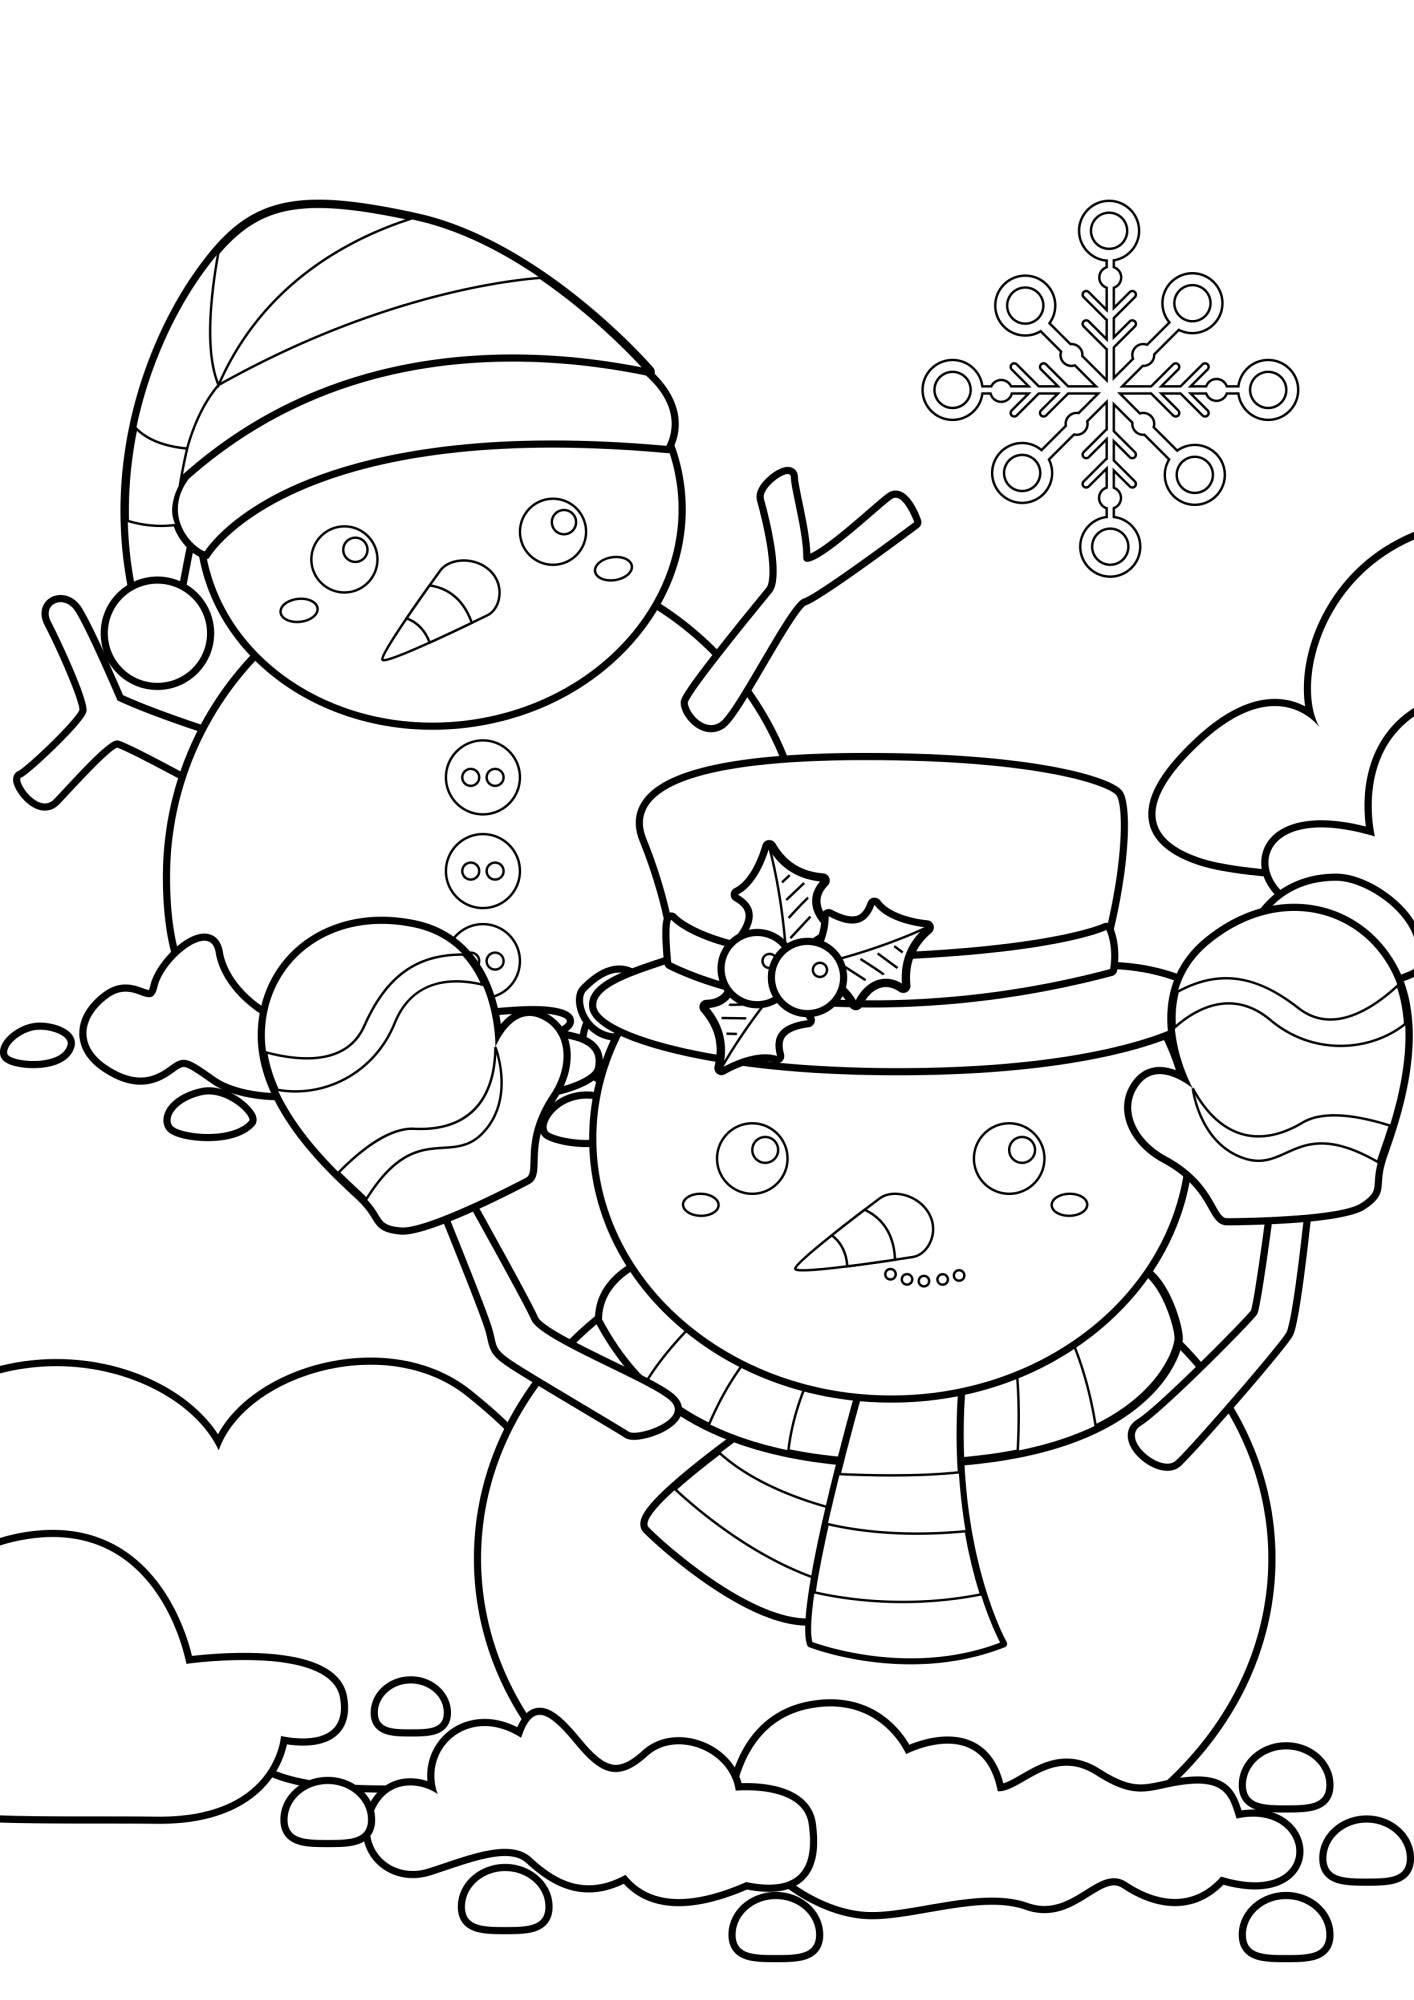 Раскраска для детей: два снеговика в шляпе и чепчике играют в снегу